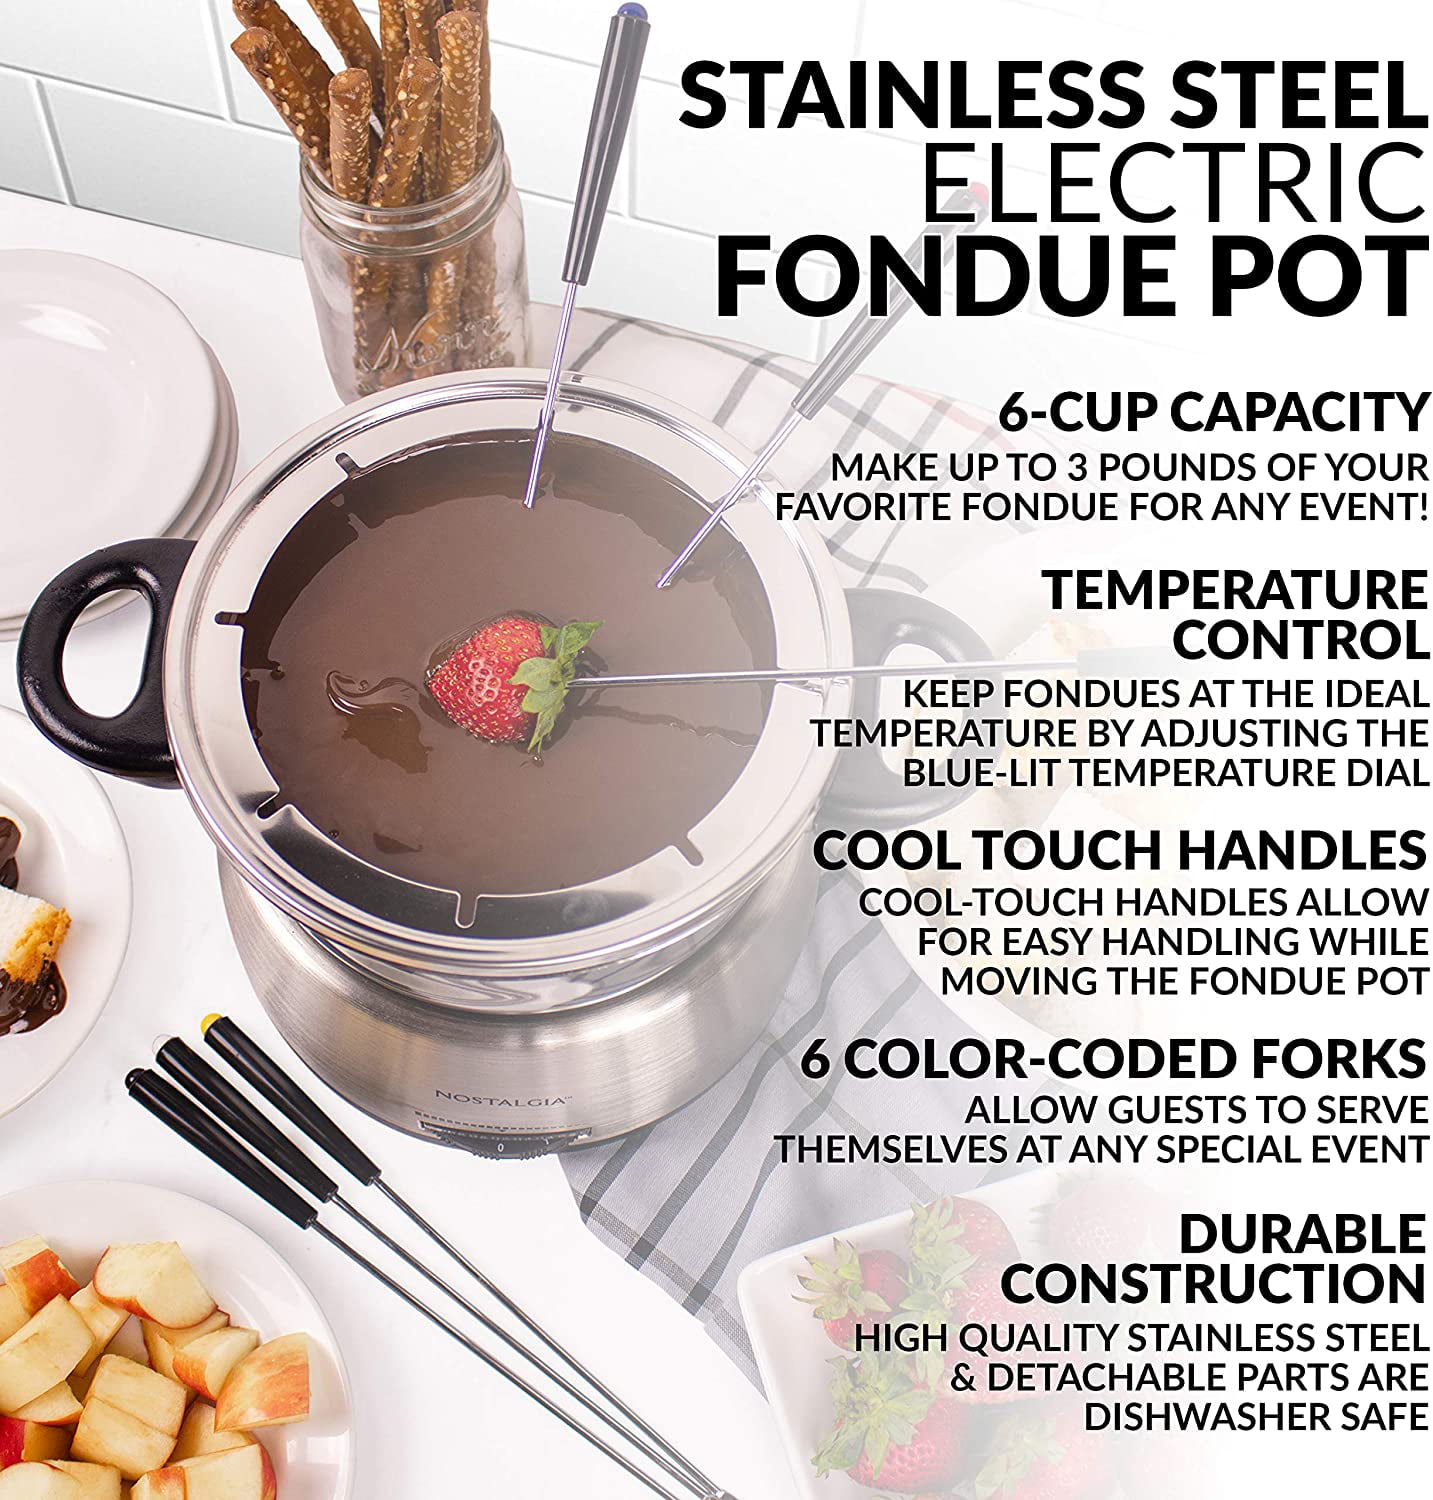 Nostalgia Electric Fondue Pot - Stainless Steel